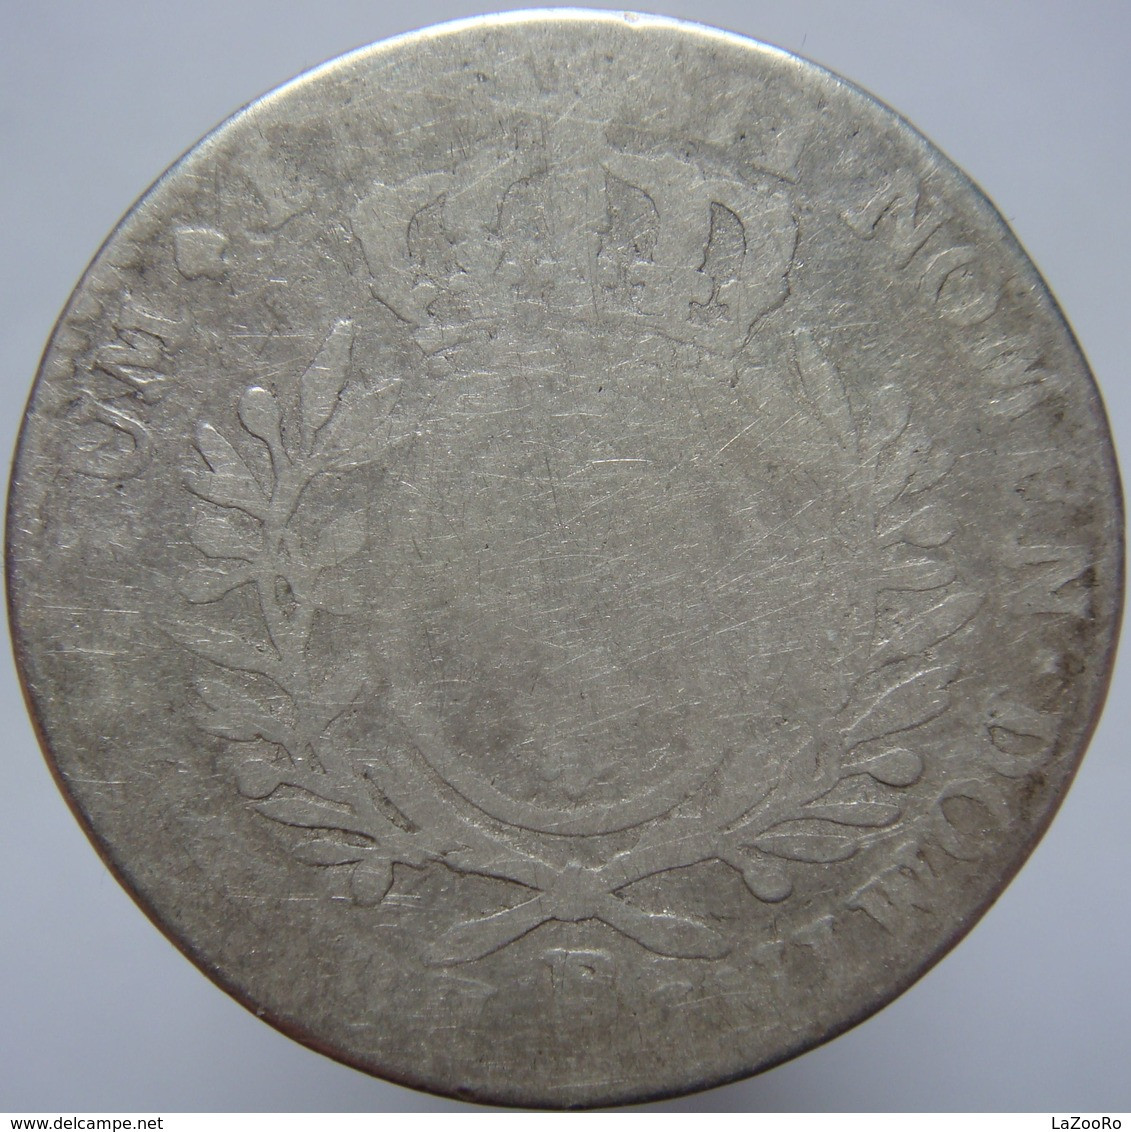 LaZooRo: France 1/2 Ecu 1726/40 VG - Silver - 1715-1774 Louis XV Le Bien-Aimé